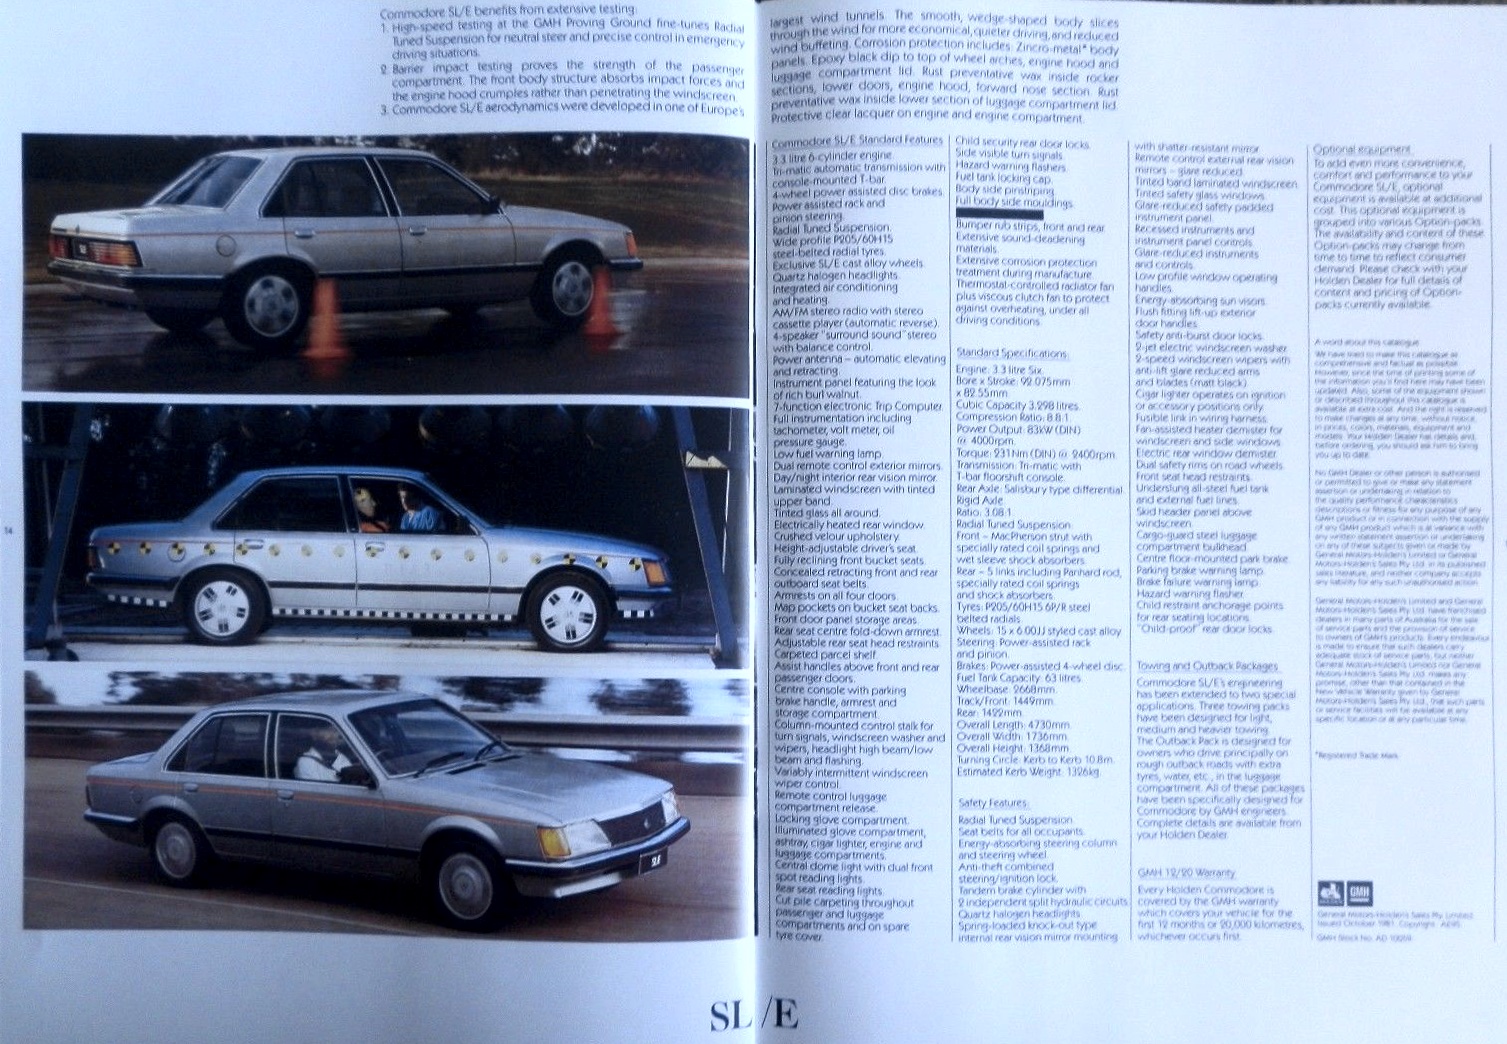 1981 Holden Commodore VH SL/E Brochure Page 4